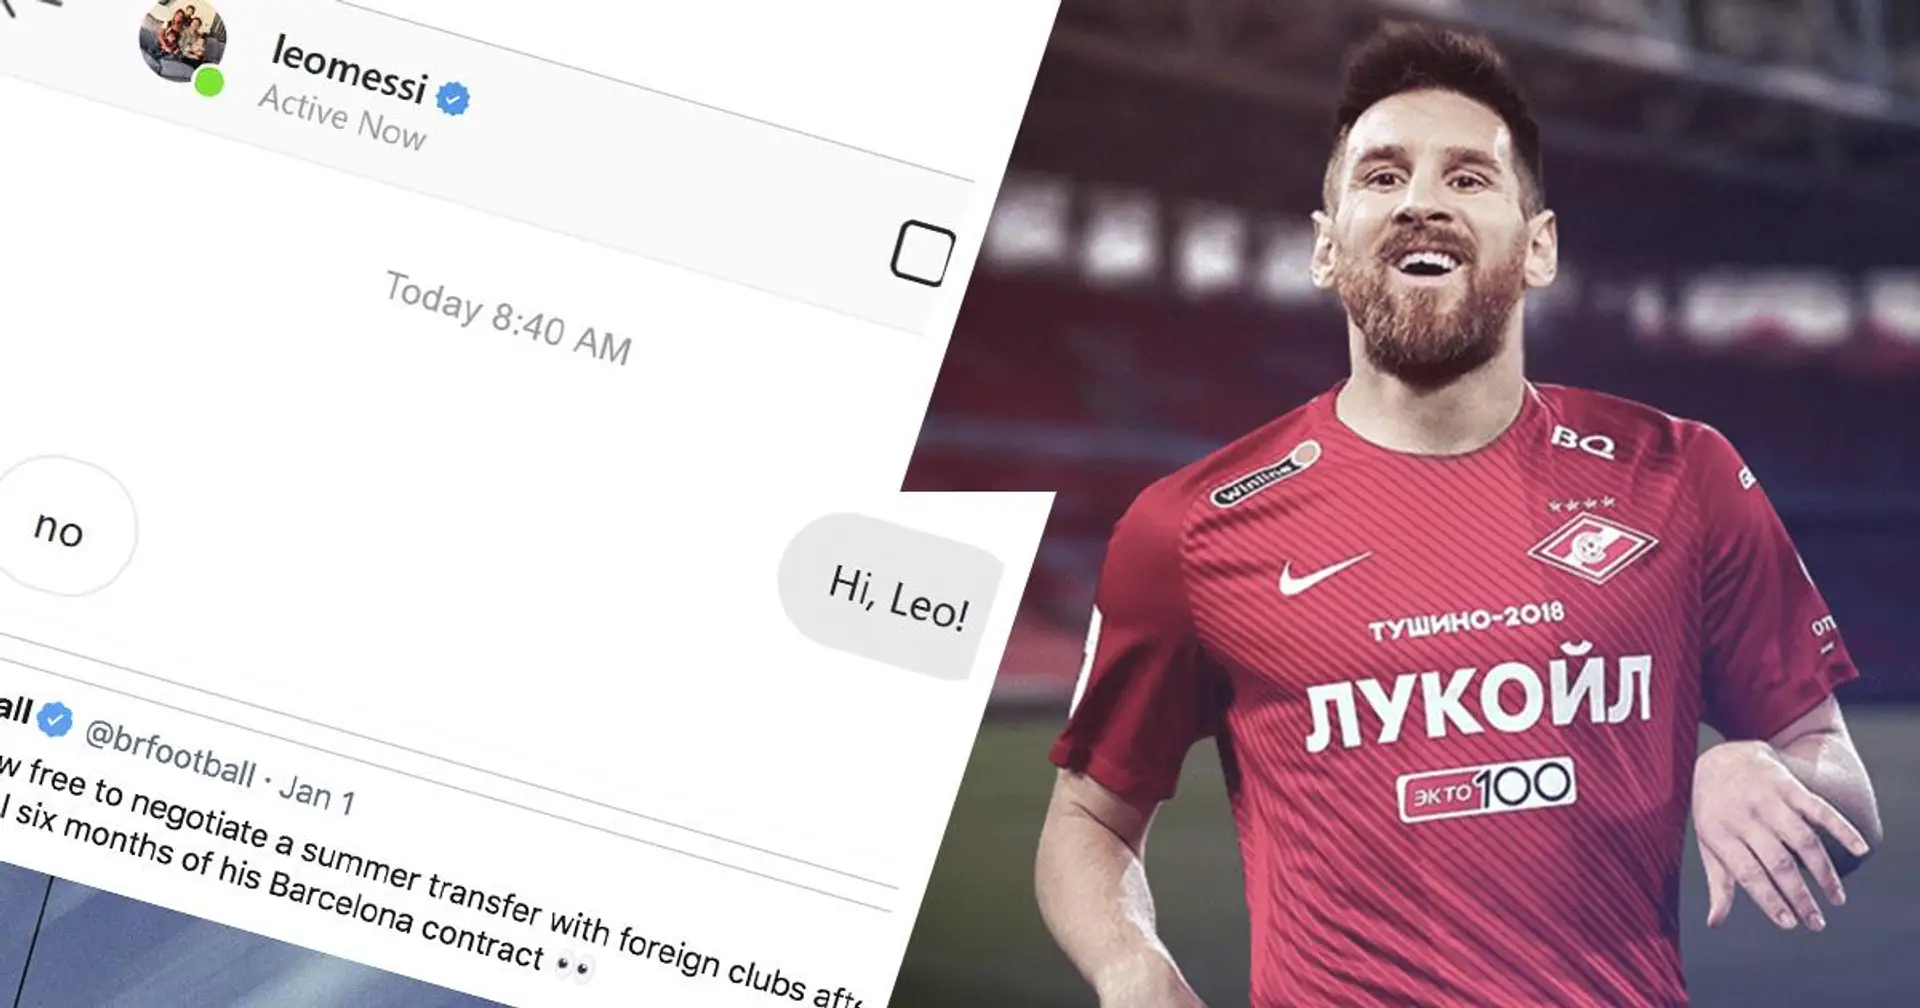 Le club russe Spartak Moscou "divulgue" une conversation Instagram avec Messi alors que l'Argentin est libre de discuter de son avenir avec d'autres clubs